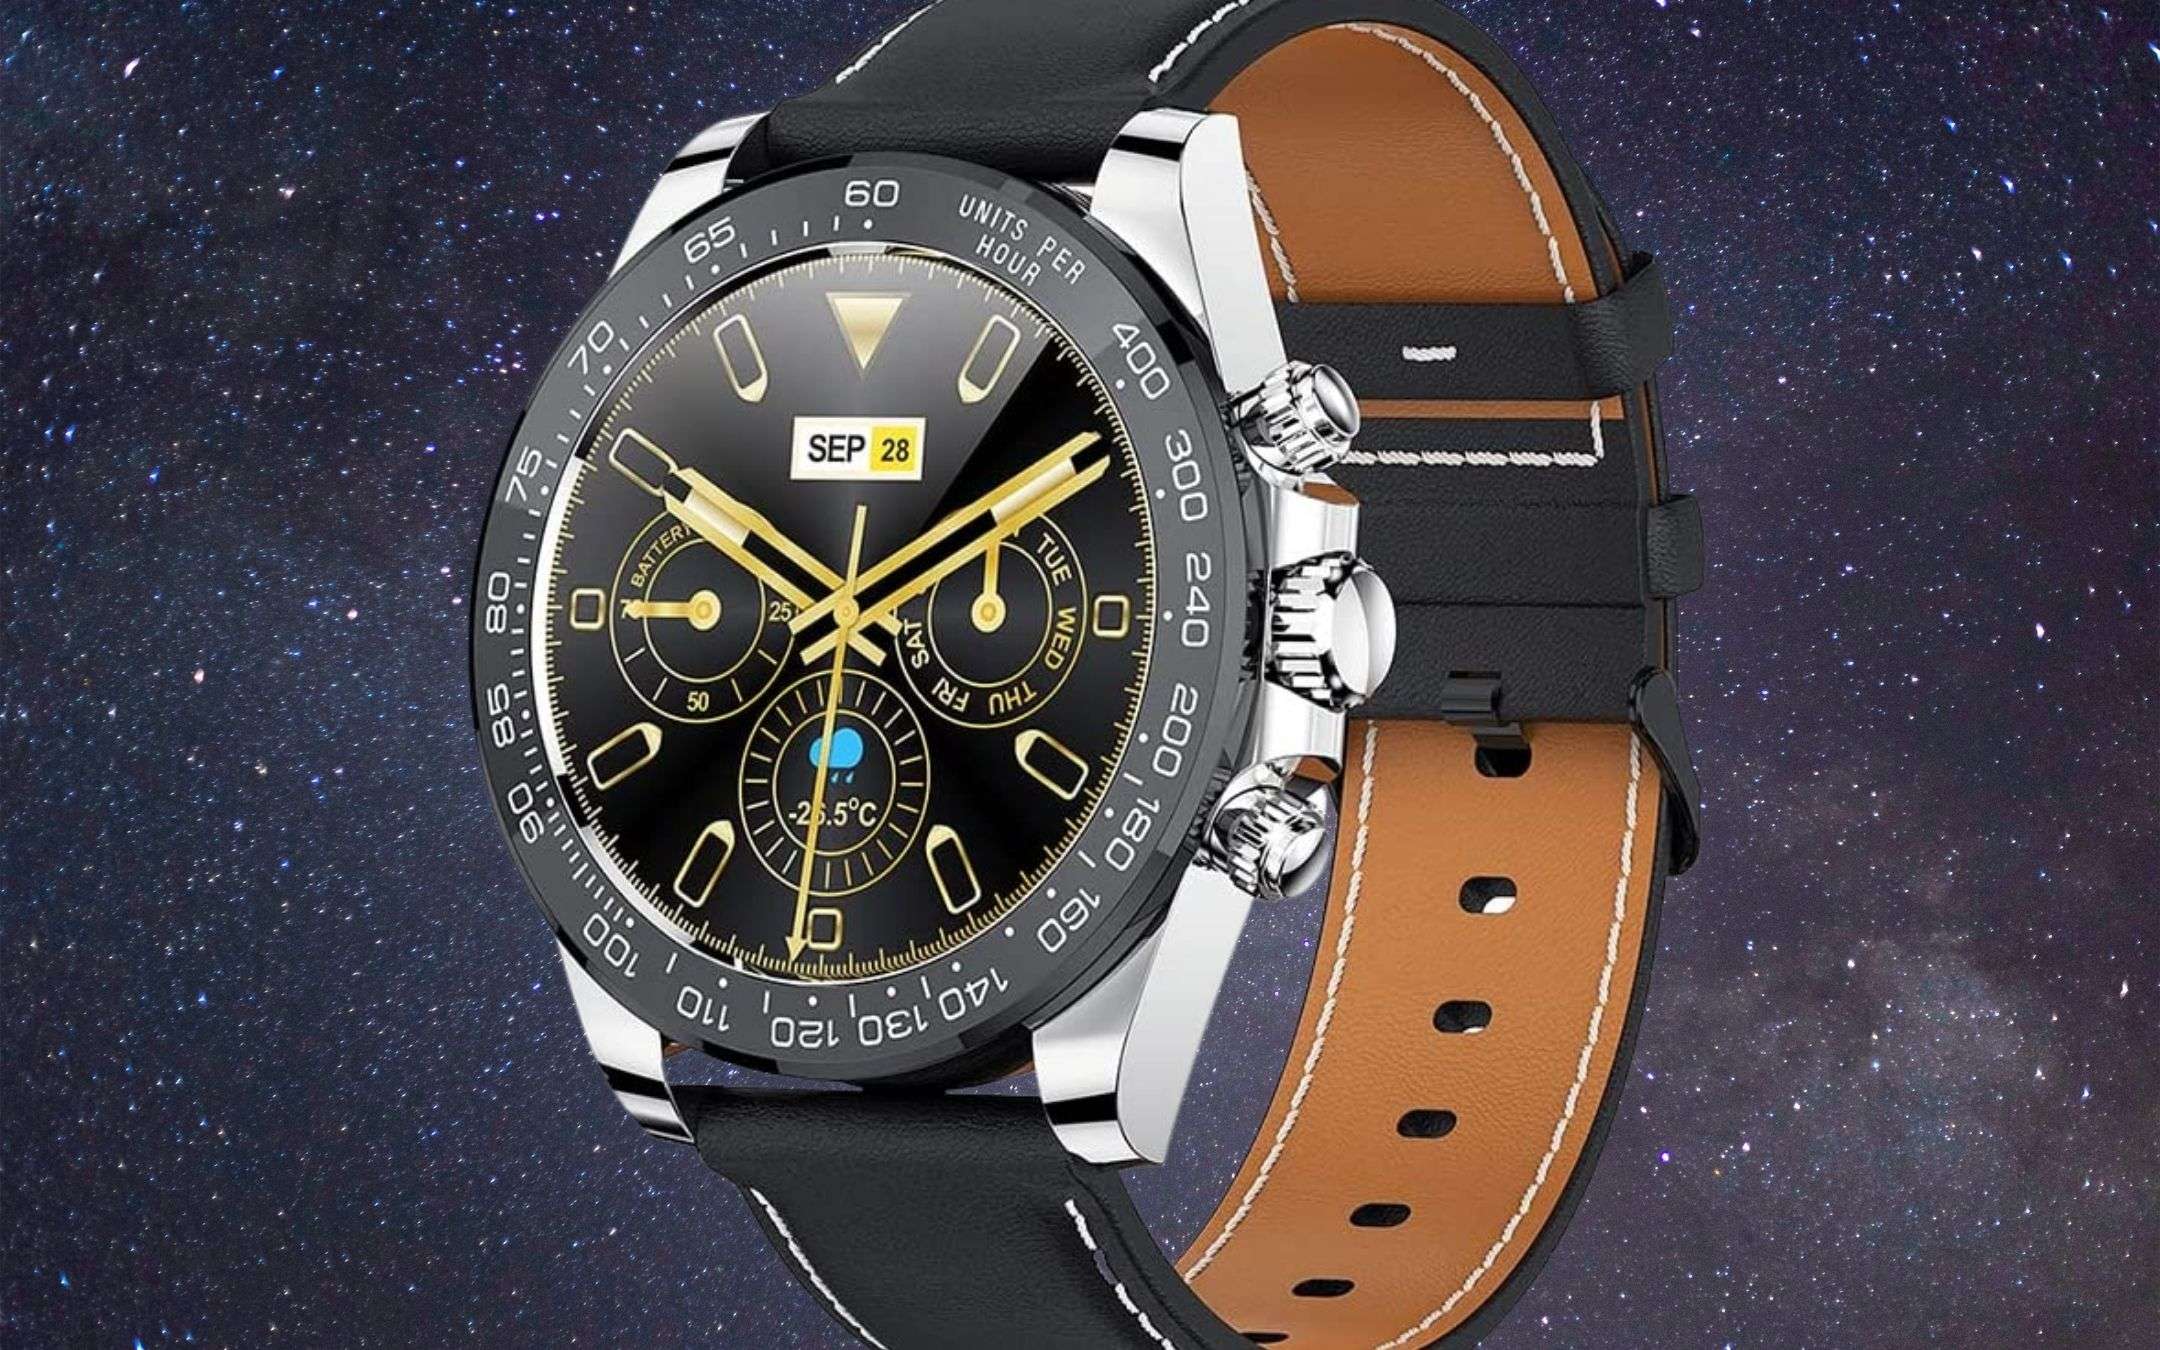 Esclusivo smartwatch a prezzo RIDICOLO su Amazon (41€)